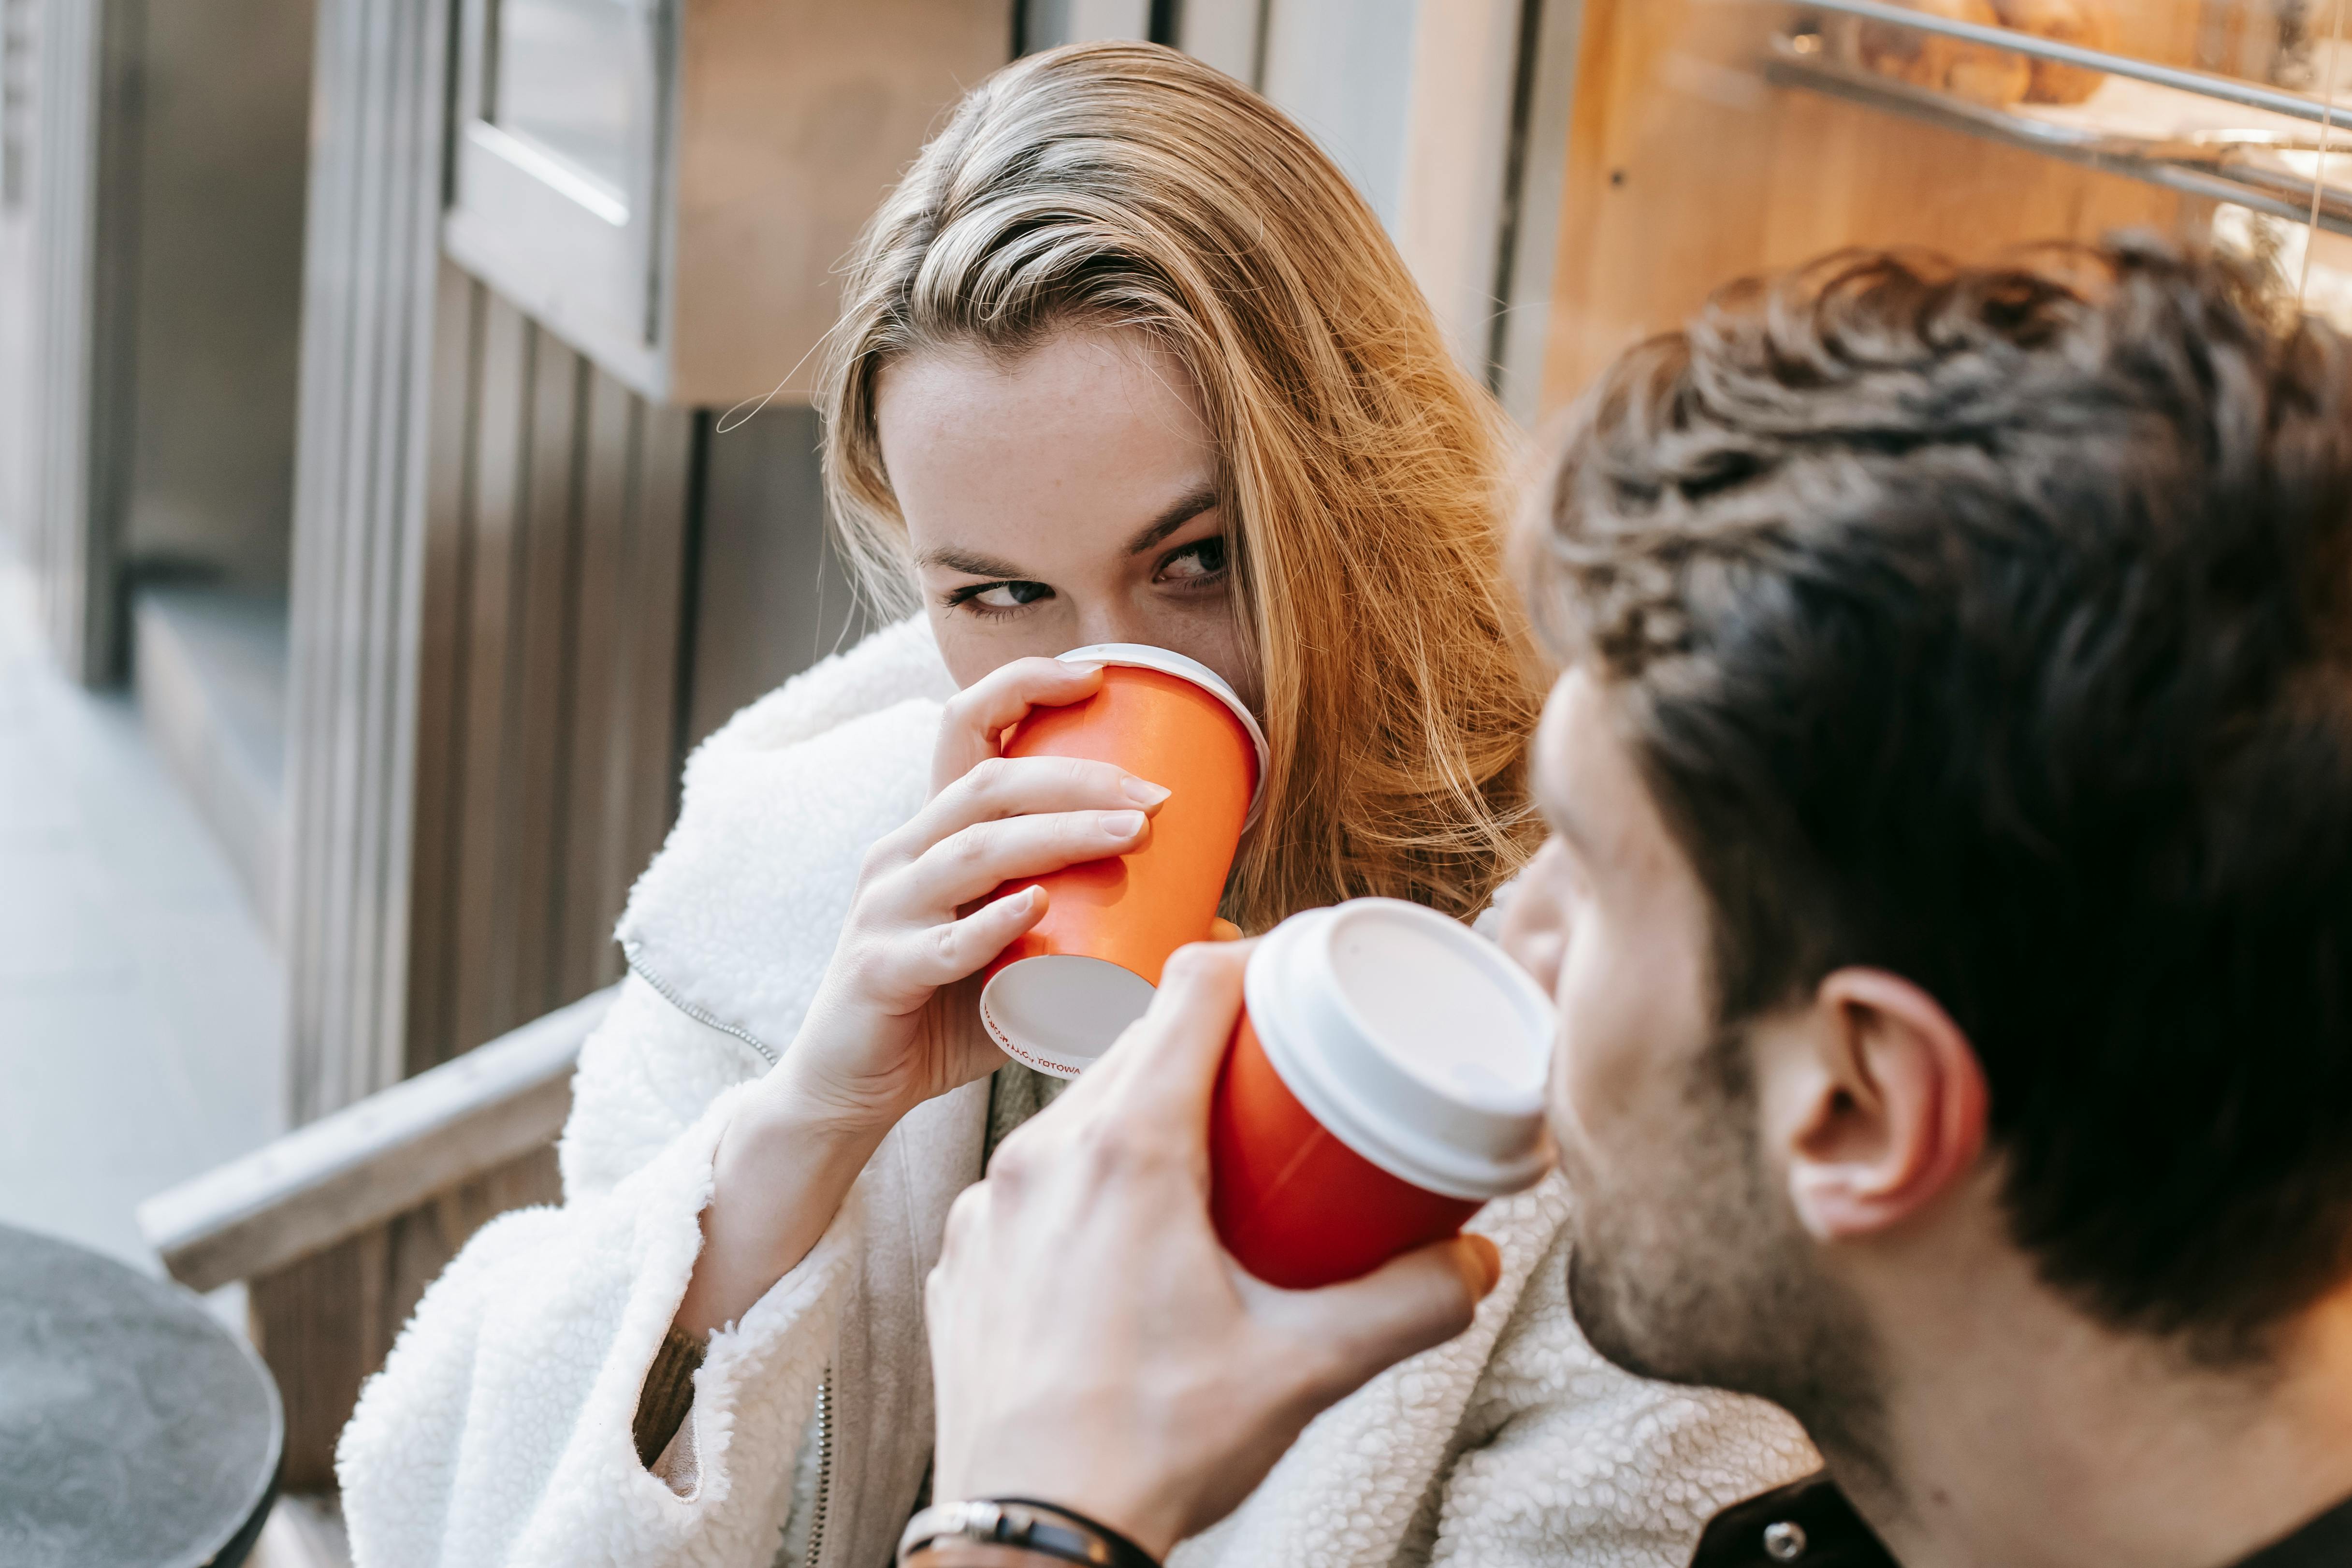 Two people having coffee | Source: Pexels